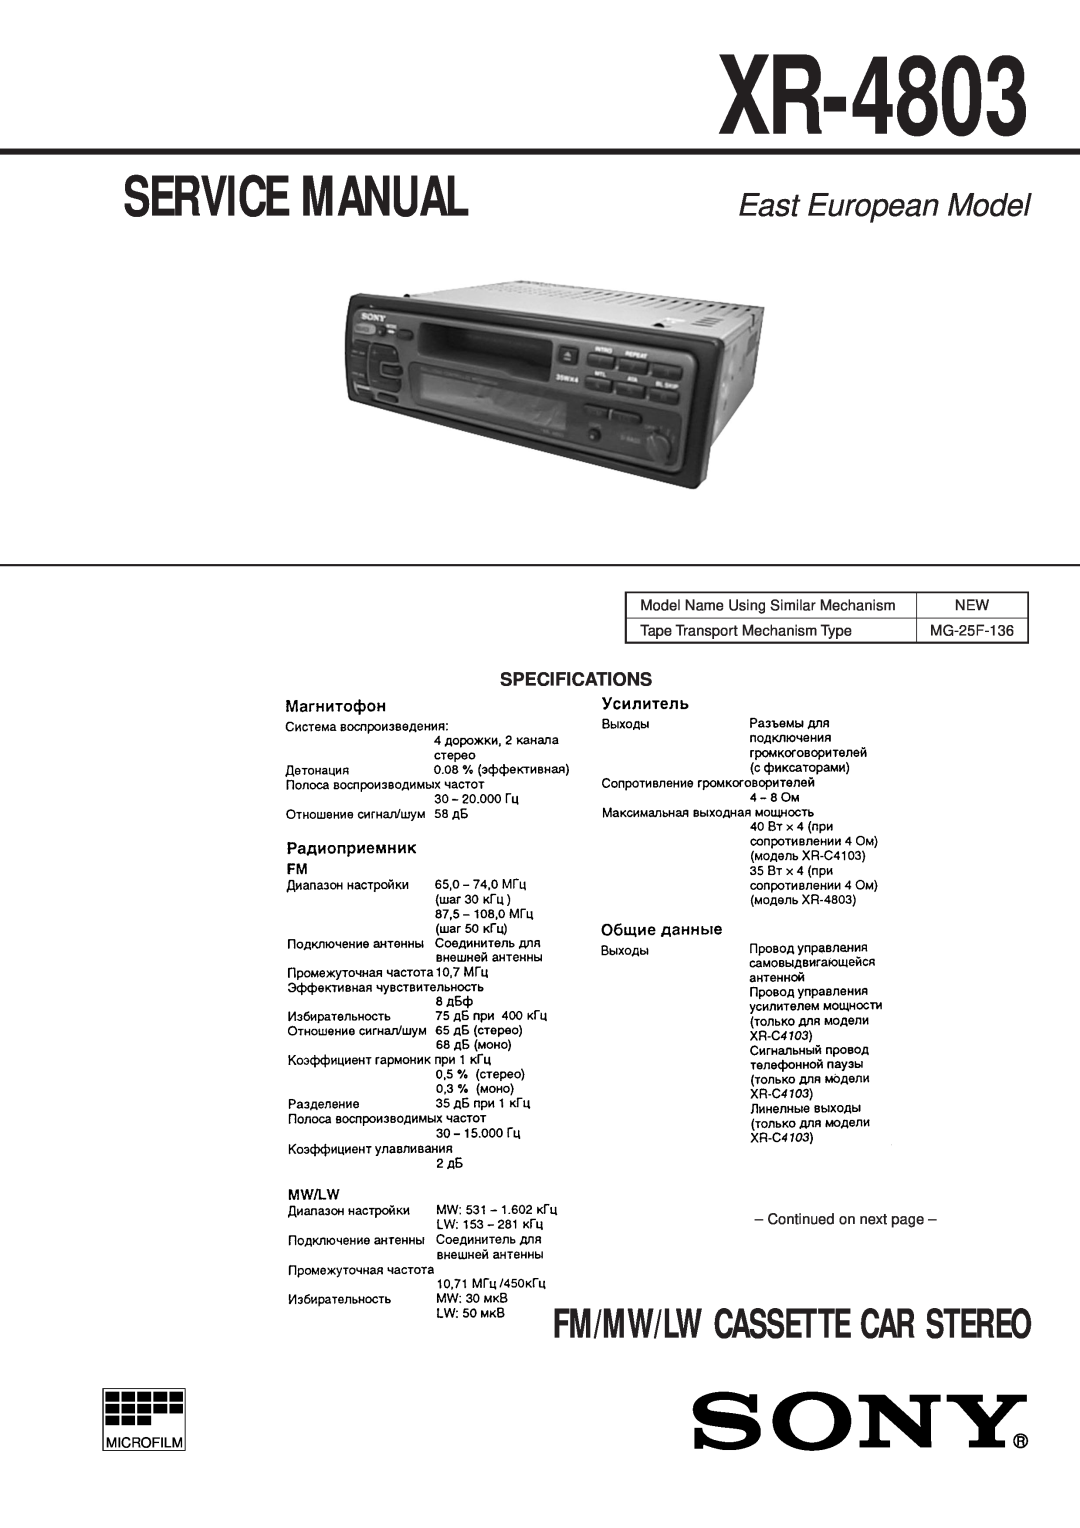 Sony XR-4803 service manual East European Model, Fm/Mw/Lw Cassette Car Stereo 